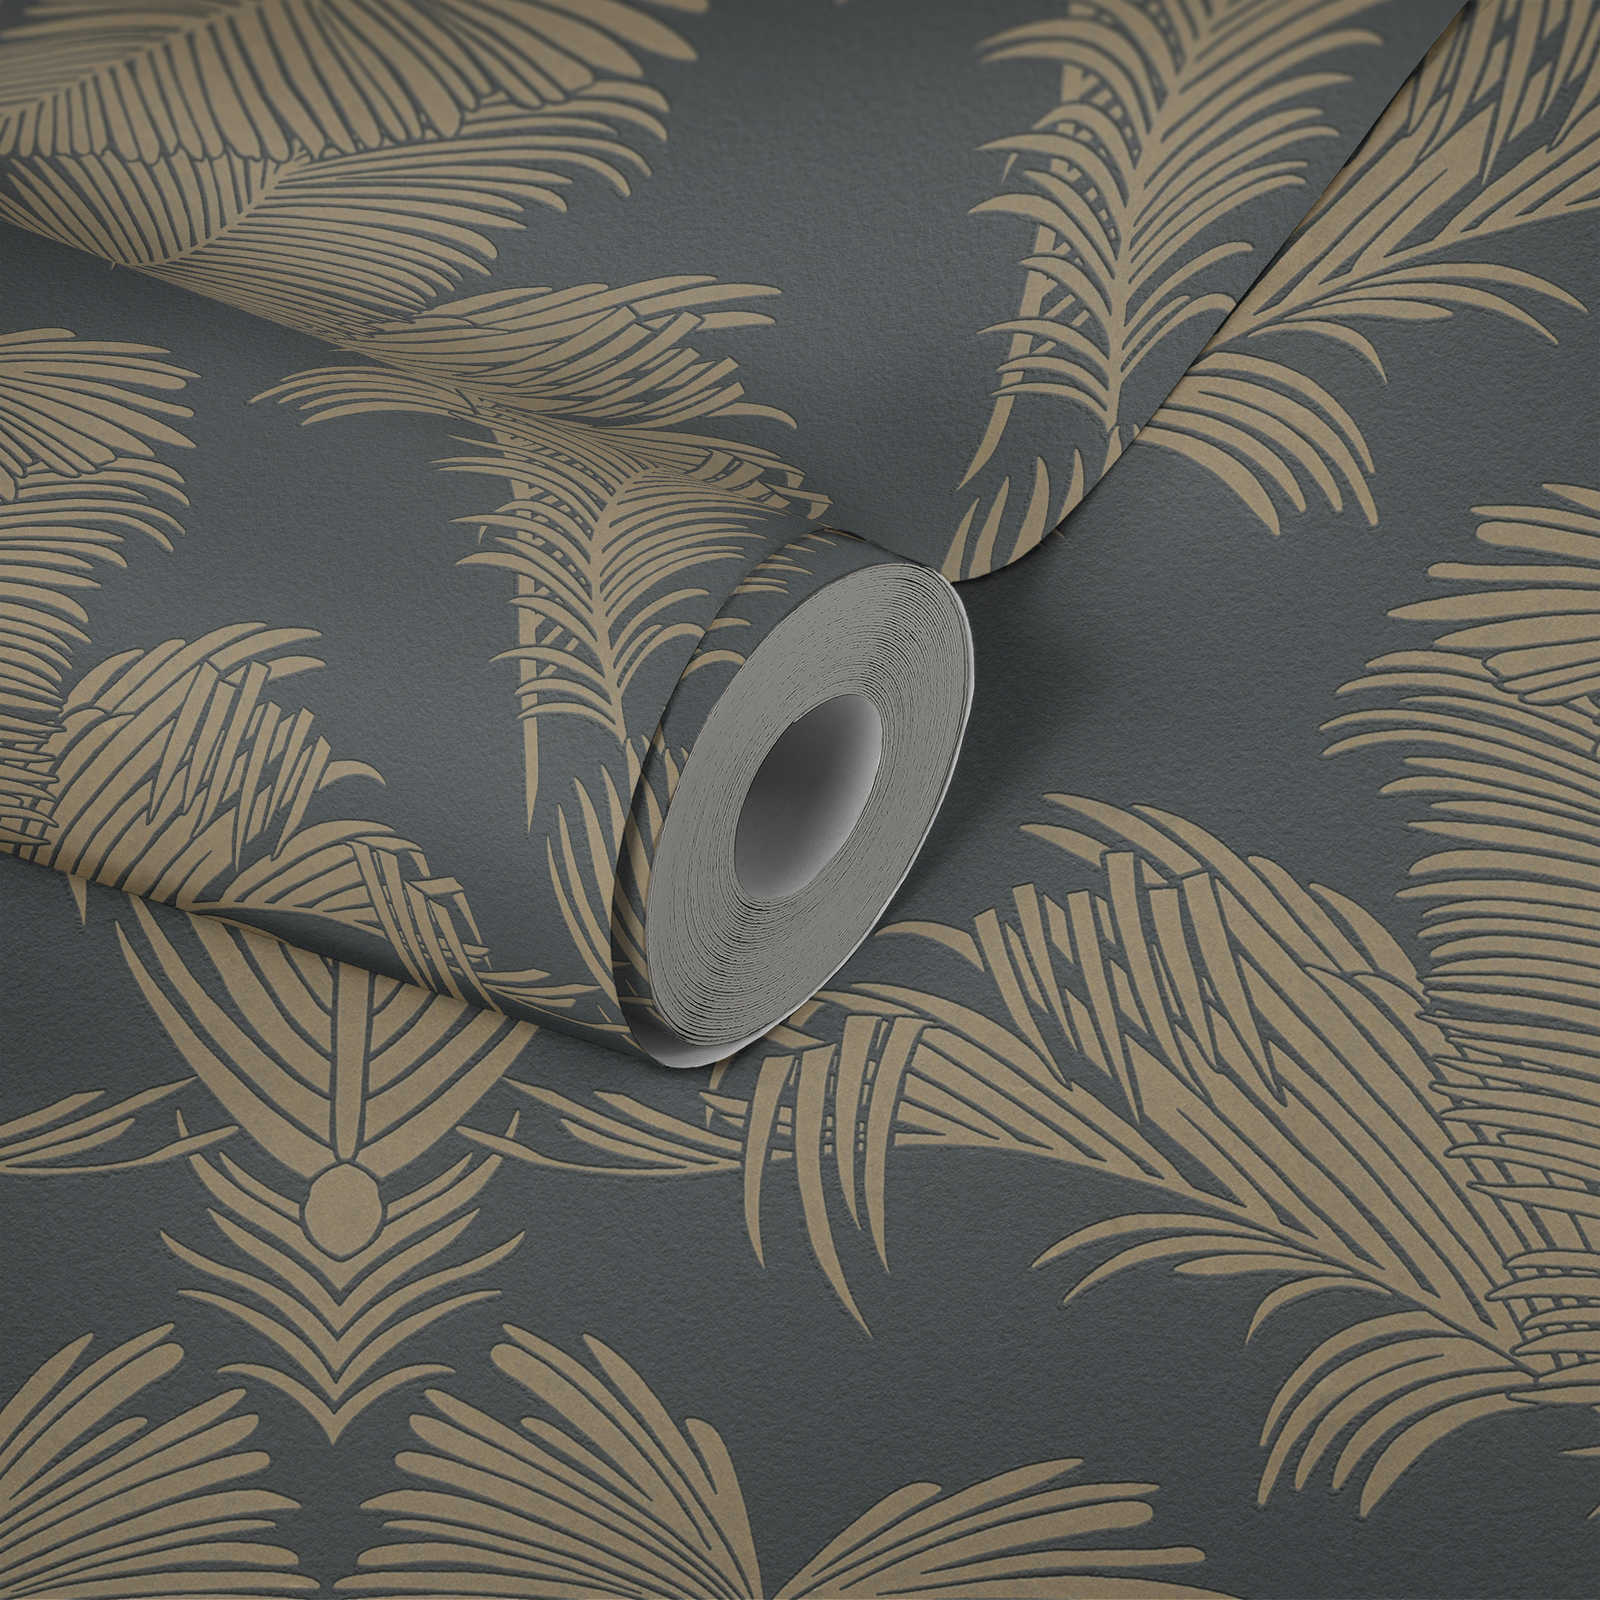             Feuilles de palmier papier peint gris & or avec structure & effet métallique
        